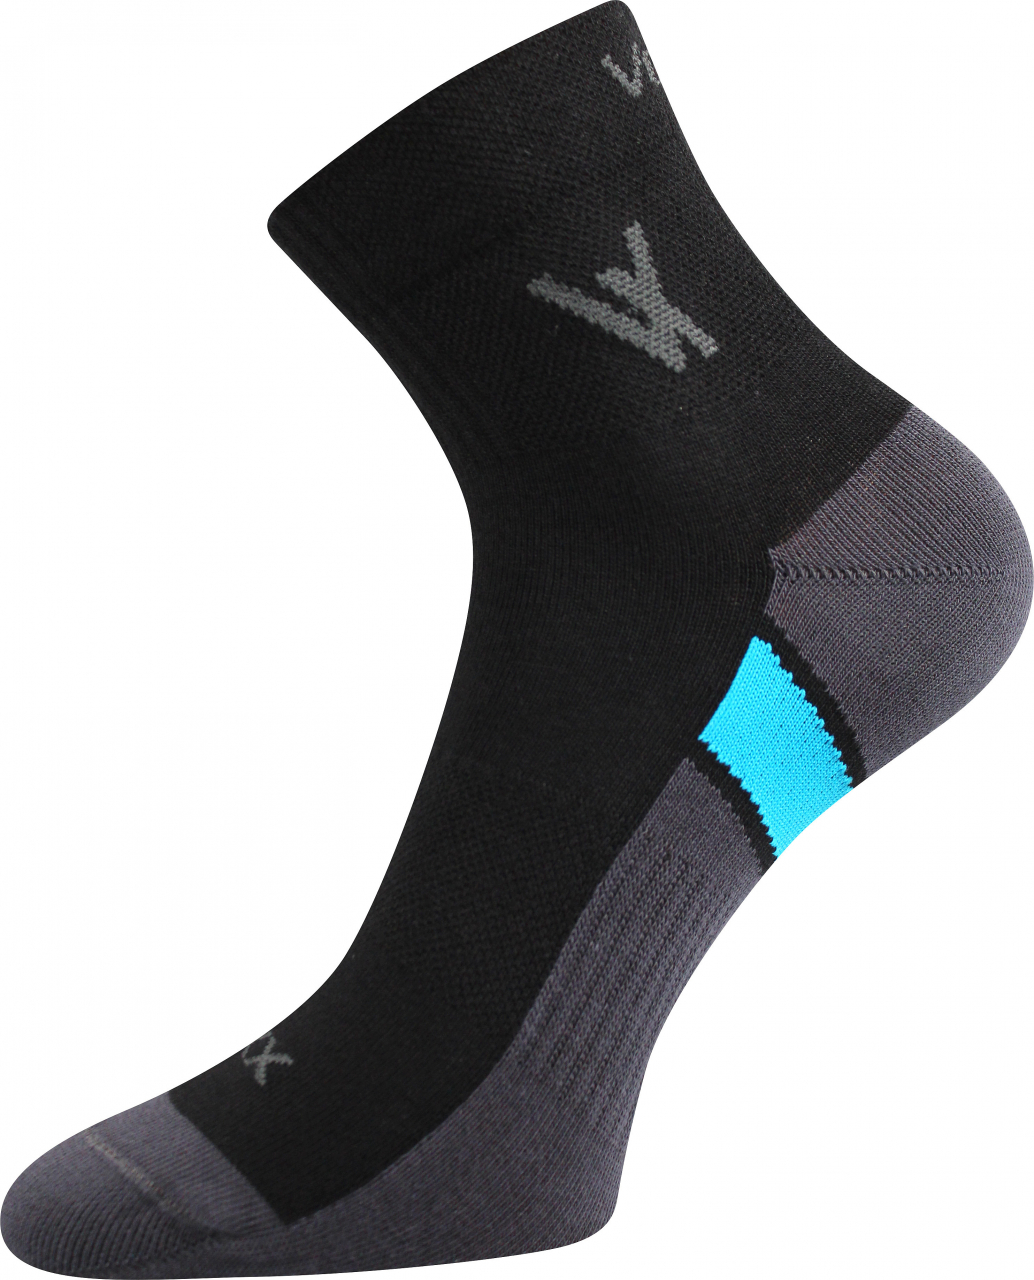 Ponožky sportovní Voxx Neo - černé, 35-38